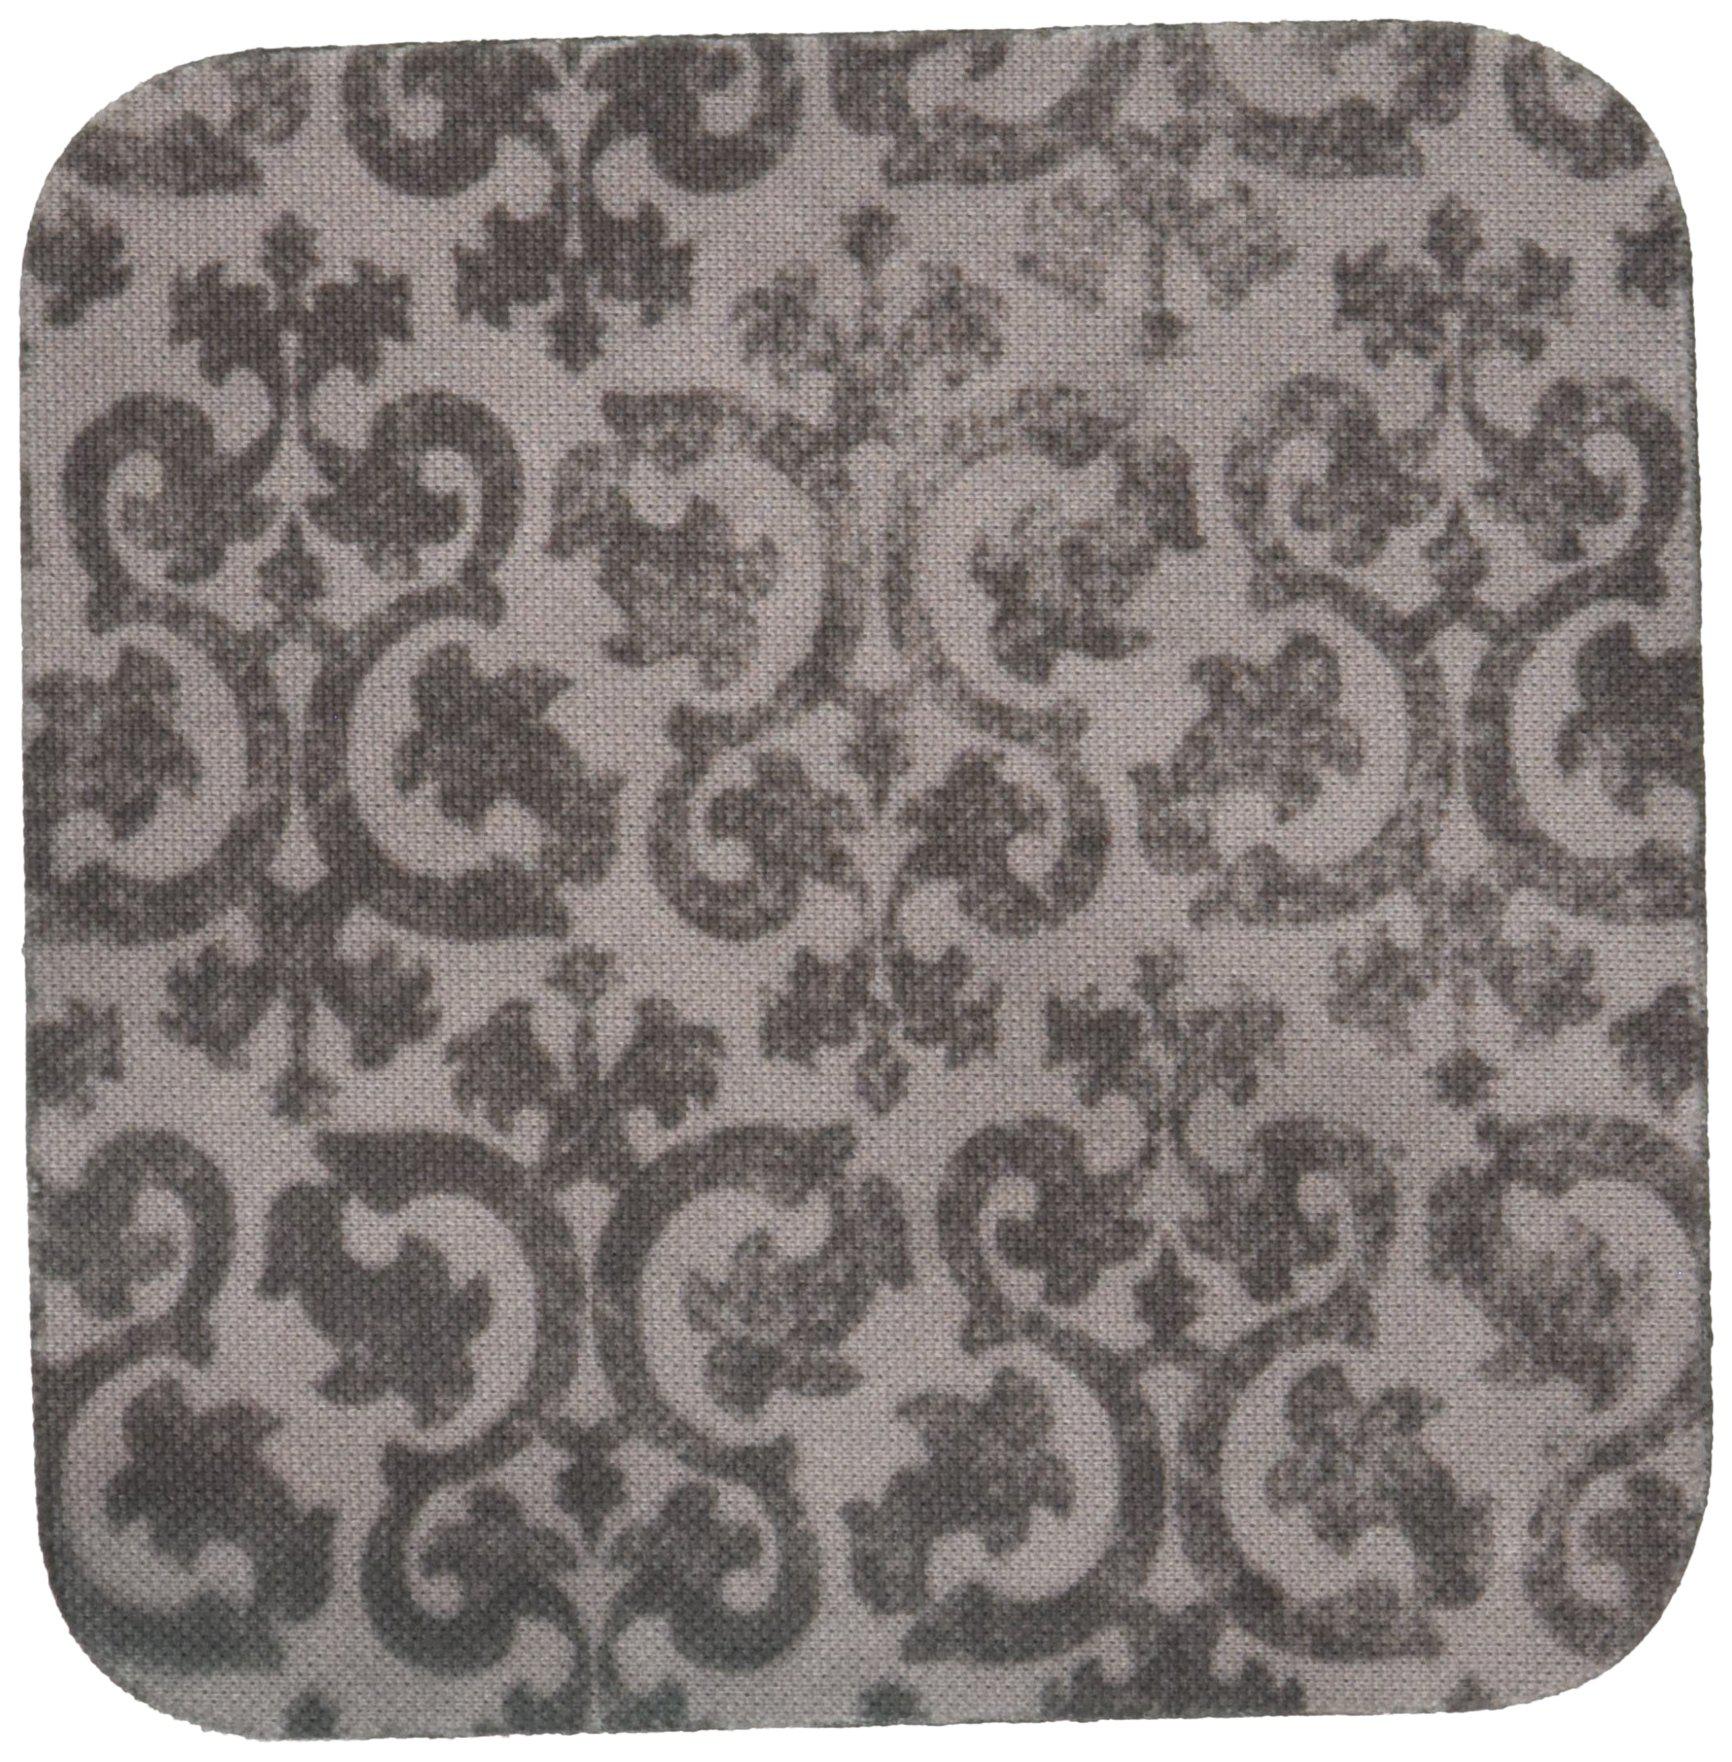 3drose cst_151434_1 grunge damask faded antique vintage swirls wallpaper fancy swirling pattern soft coasters, silver grey, s